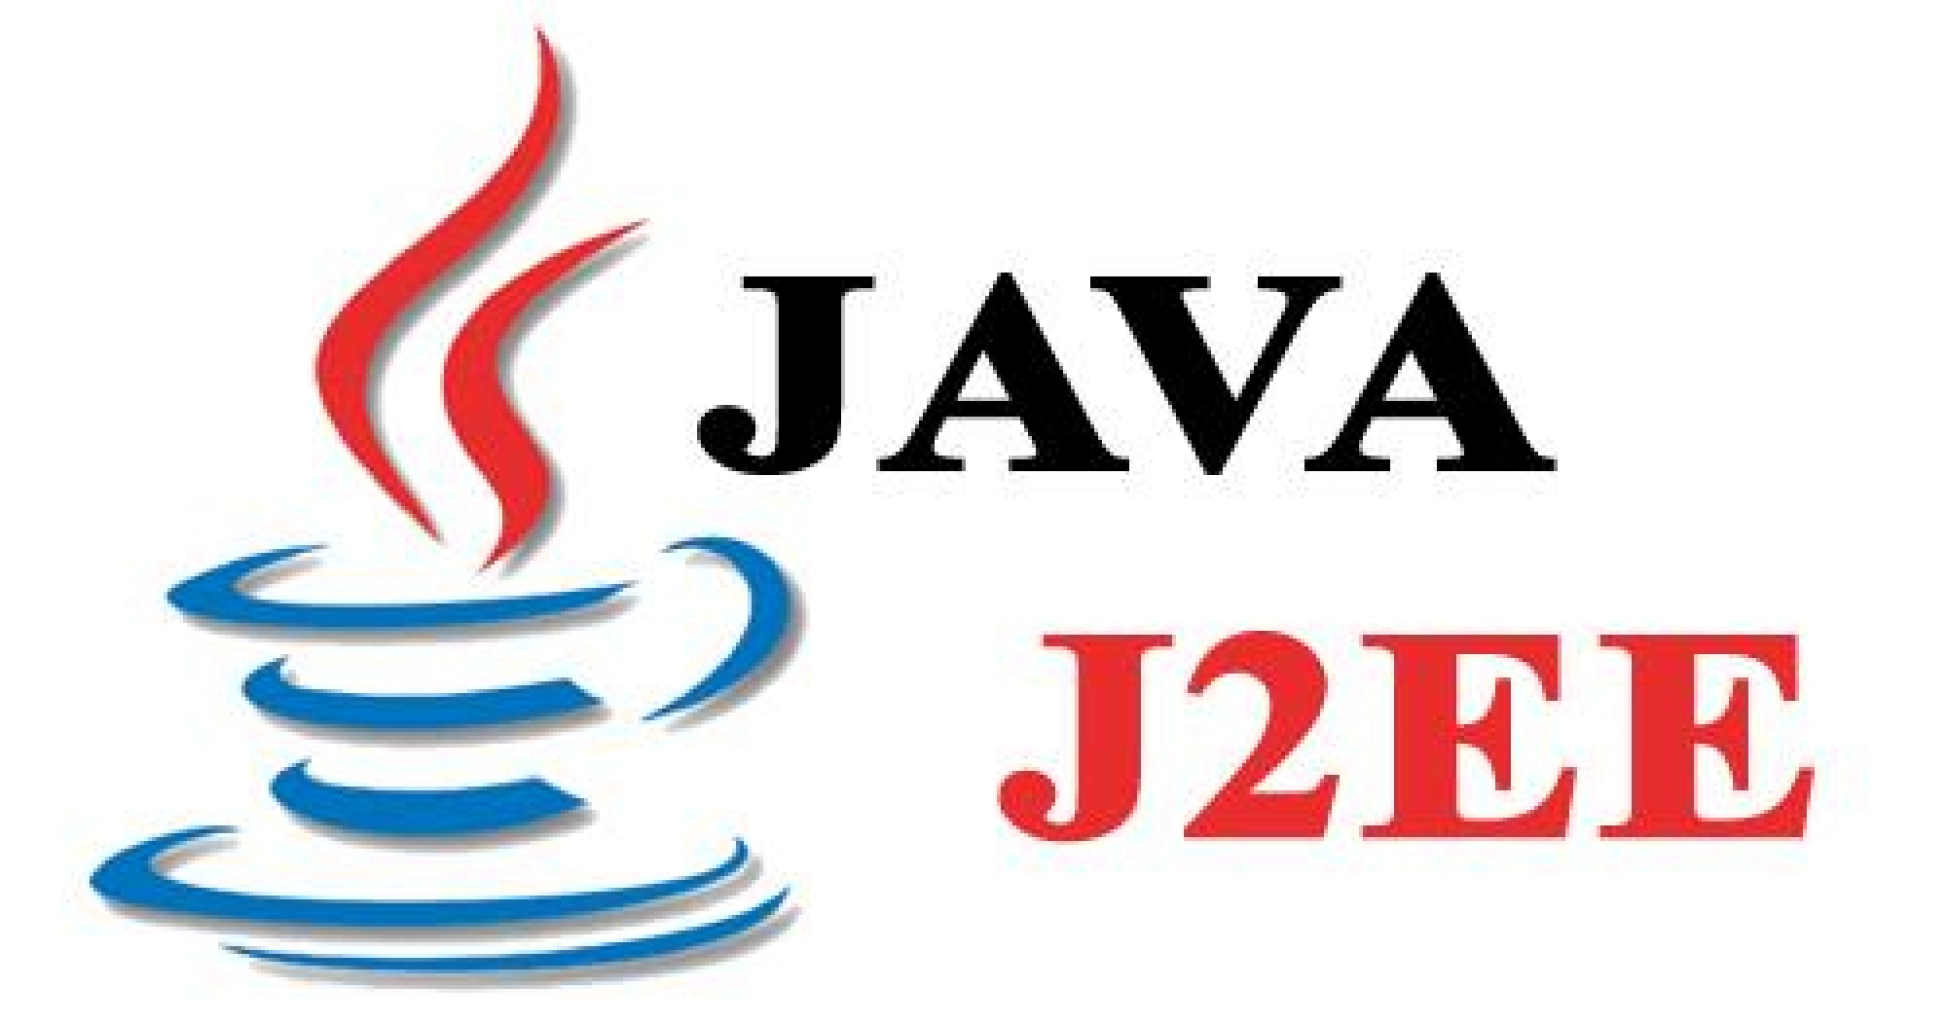 J java. Java Enterprise. Java картинки. Java 2. Java ee.